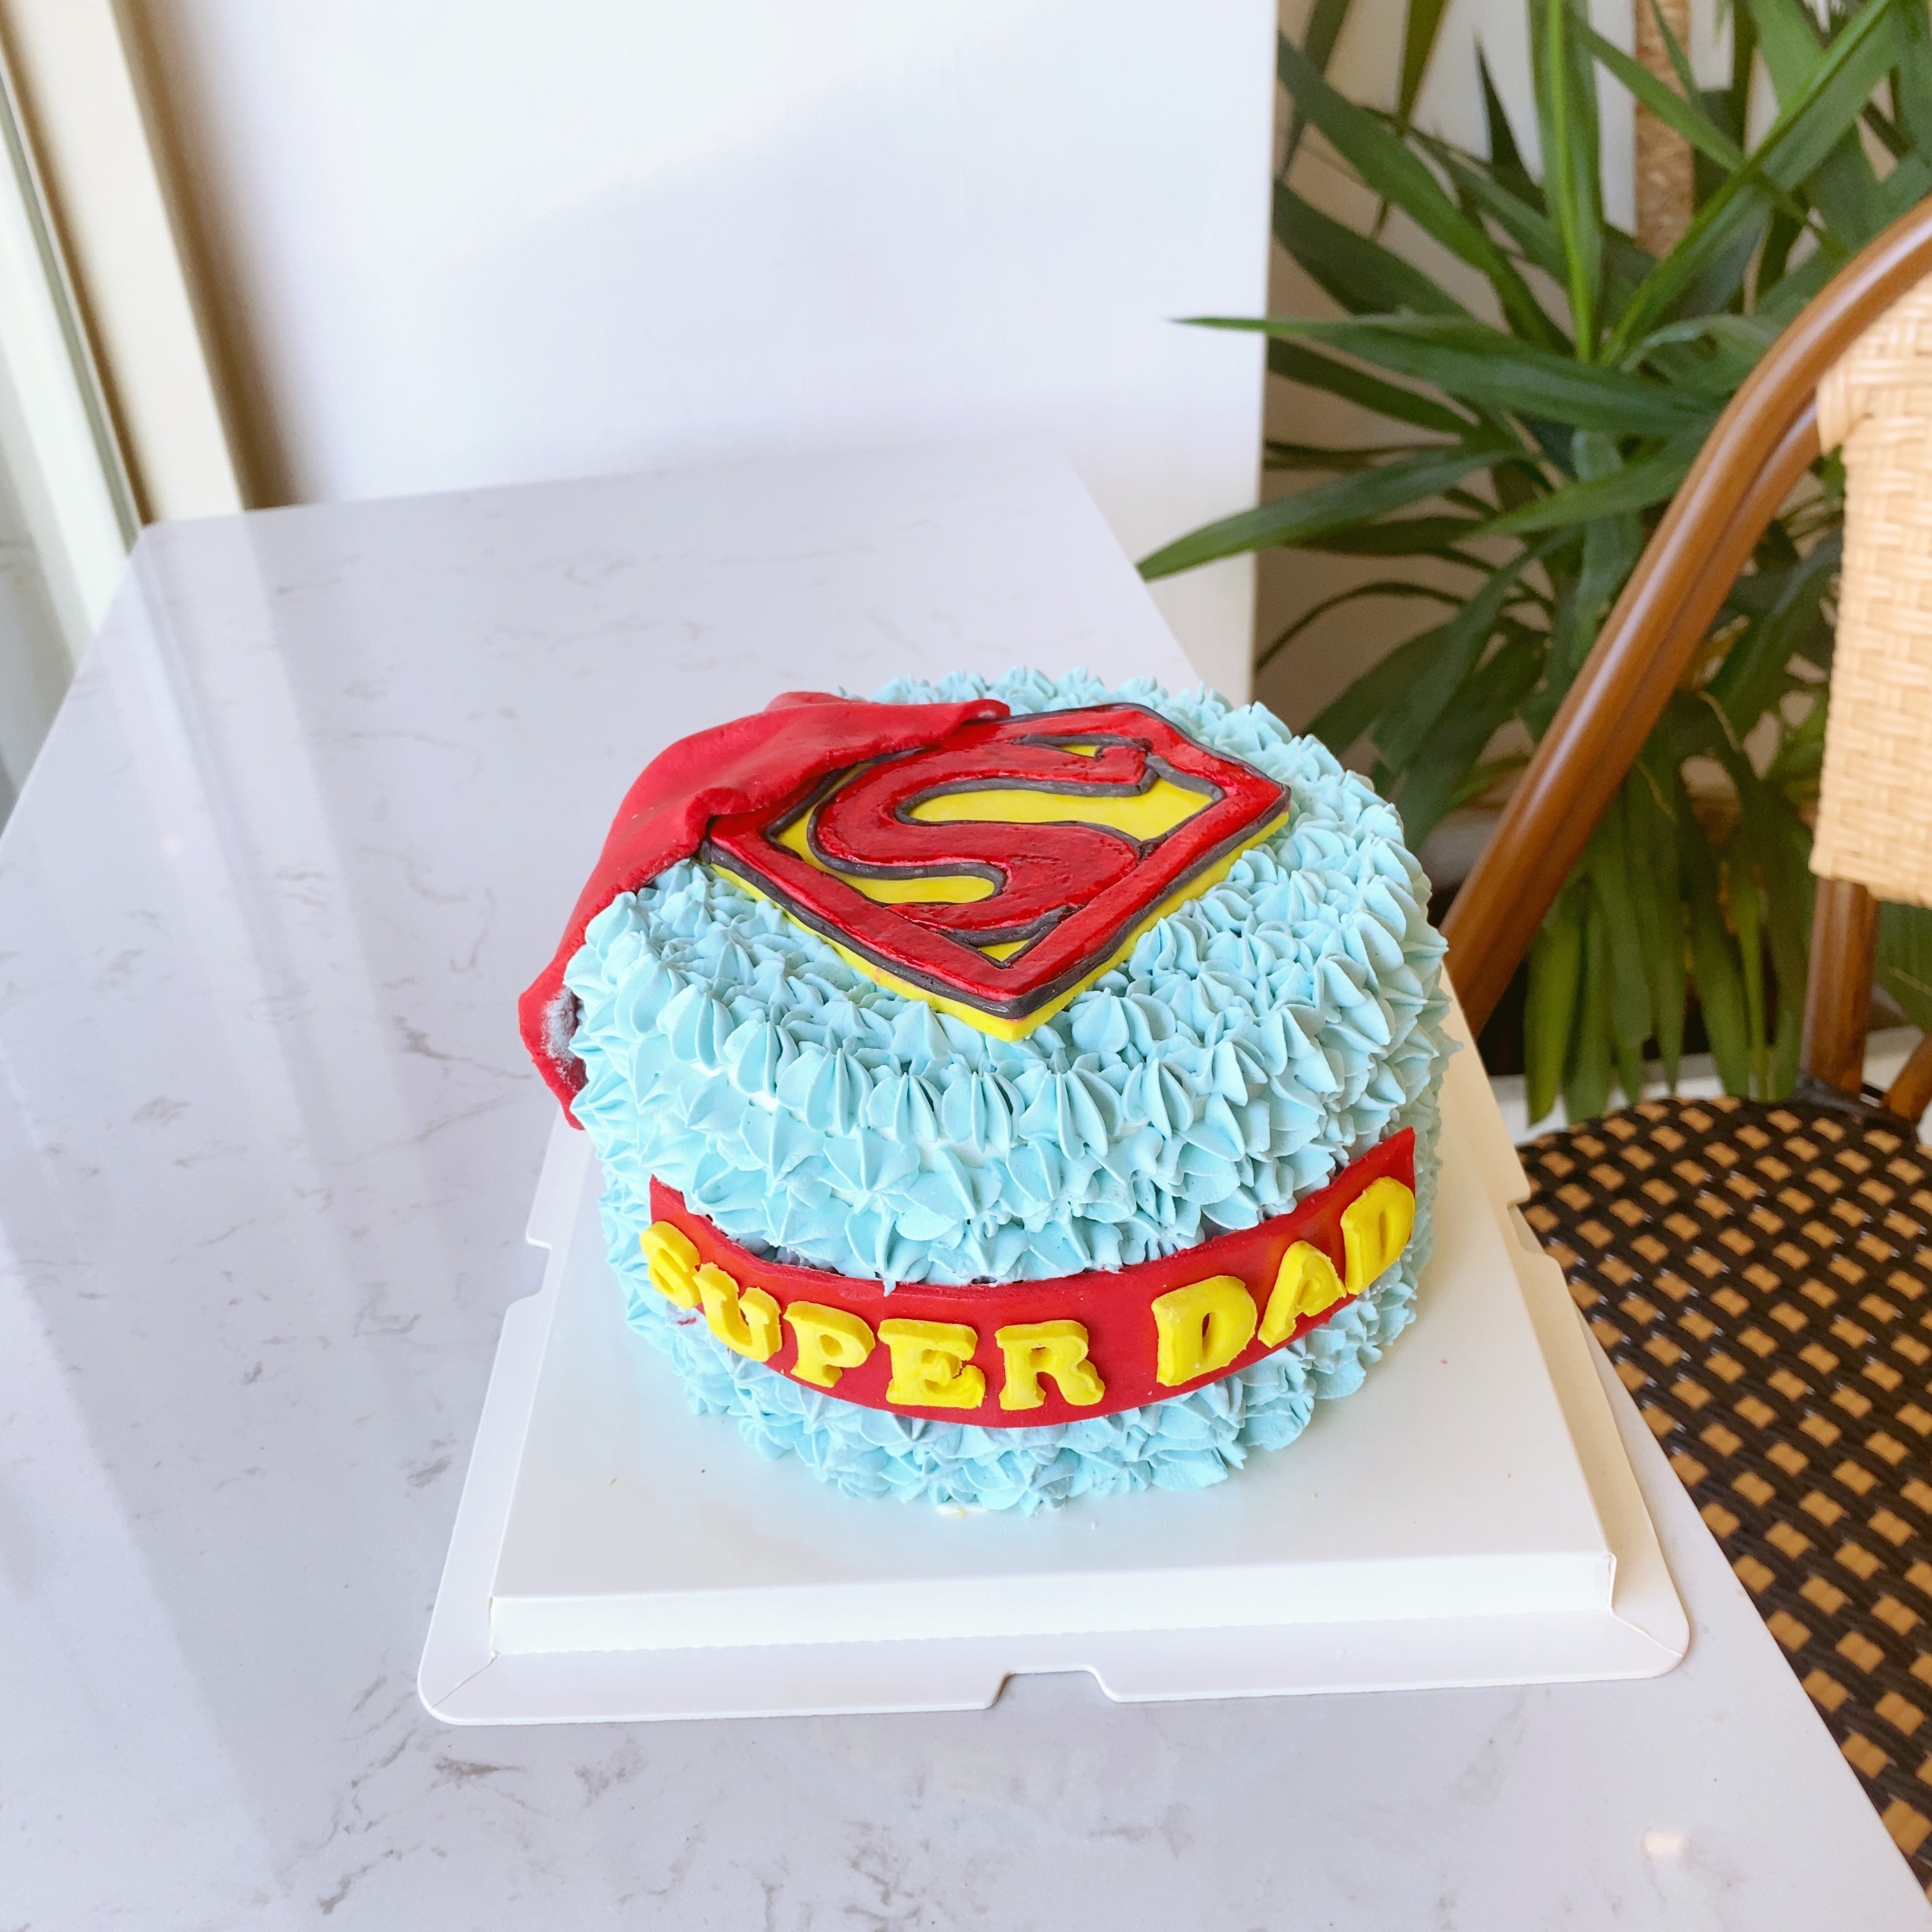 我的温馨世界: superman 超人蛋糕~